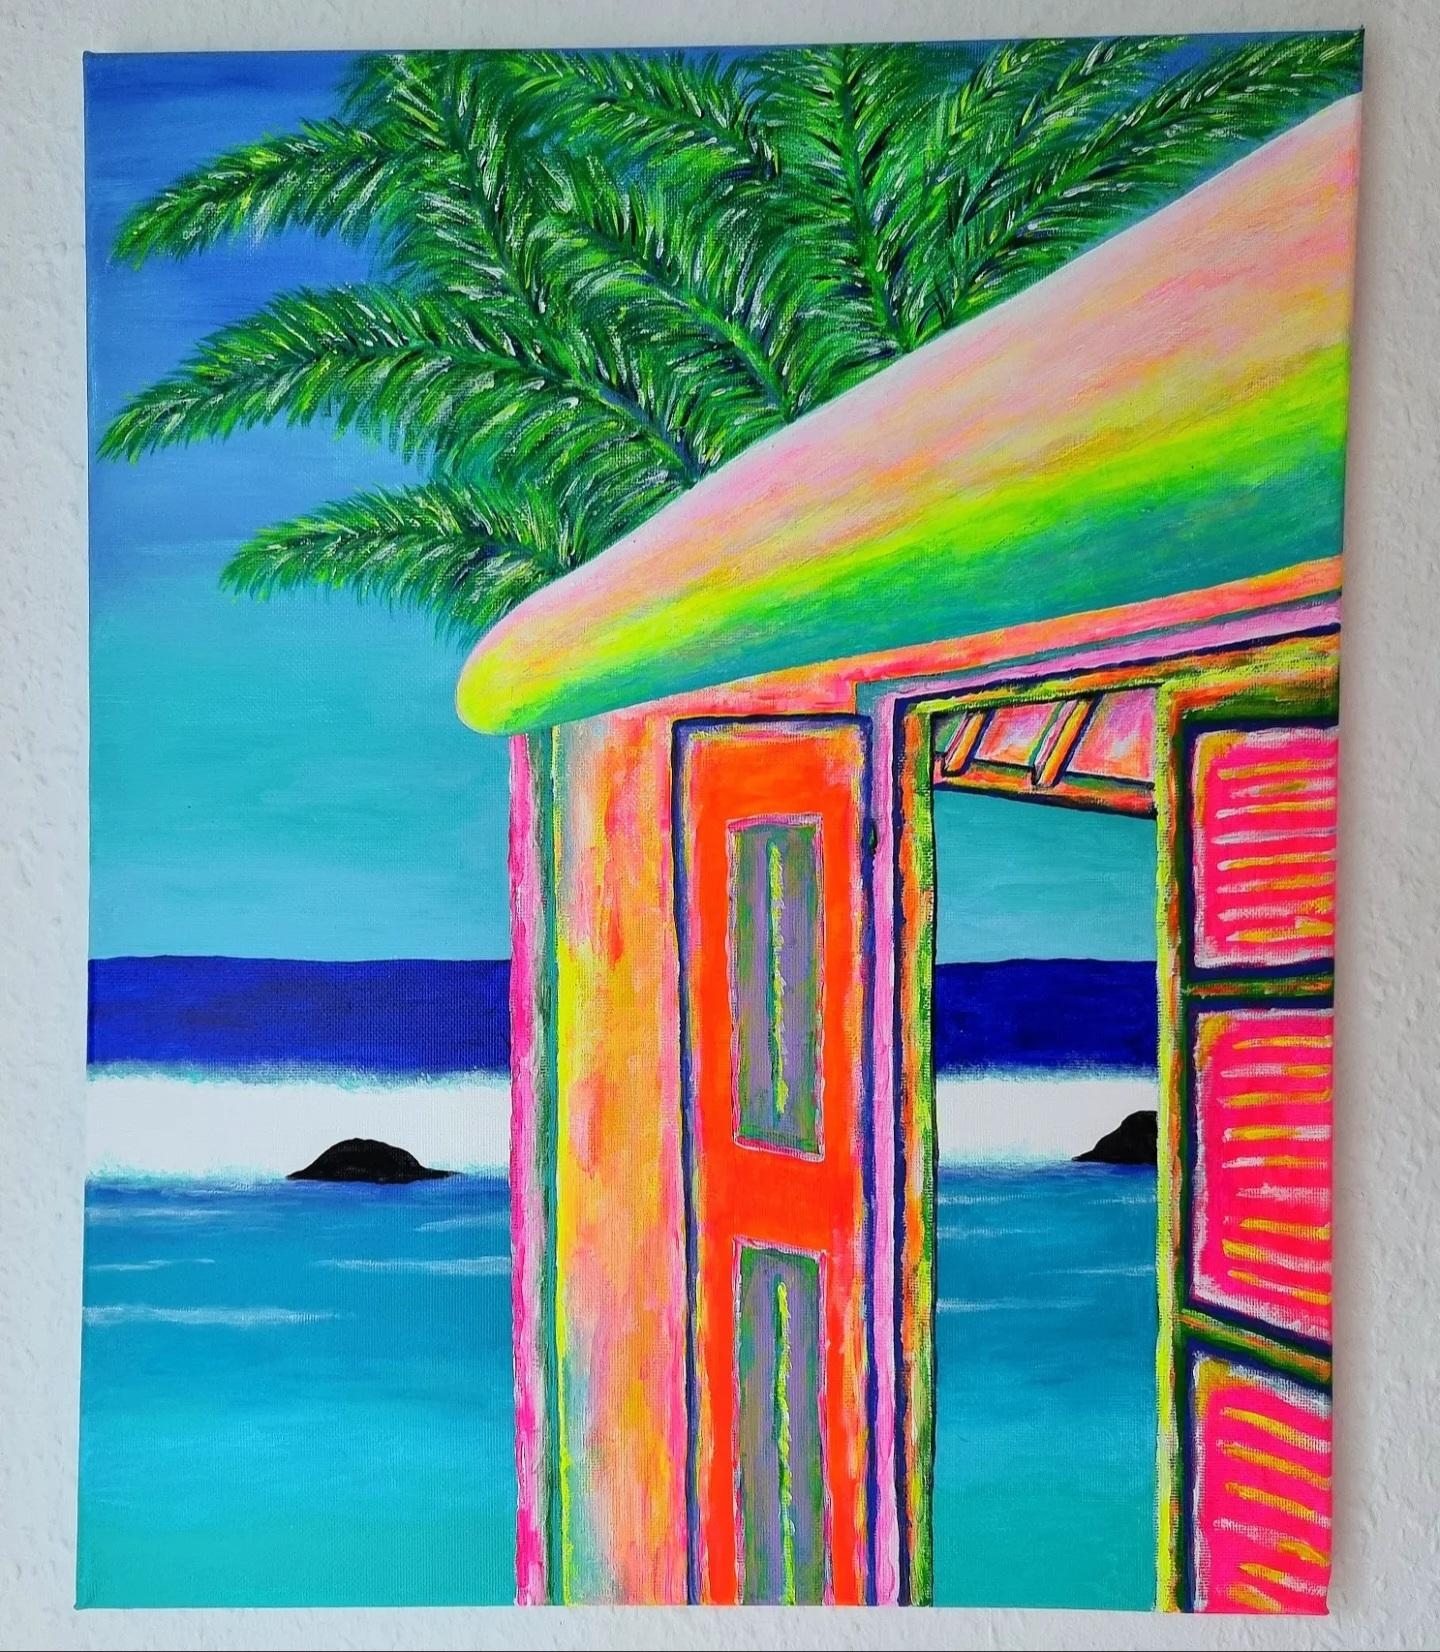 Dann habe ich mir eben den #Sommer gemalt ✌️, wenn er schon so pausiert.. #Diy #Wandgestaltung #Deko #Wohnzimmer #Farbe